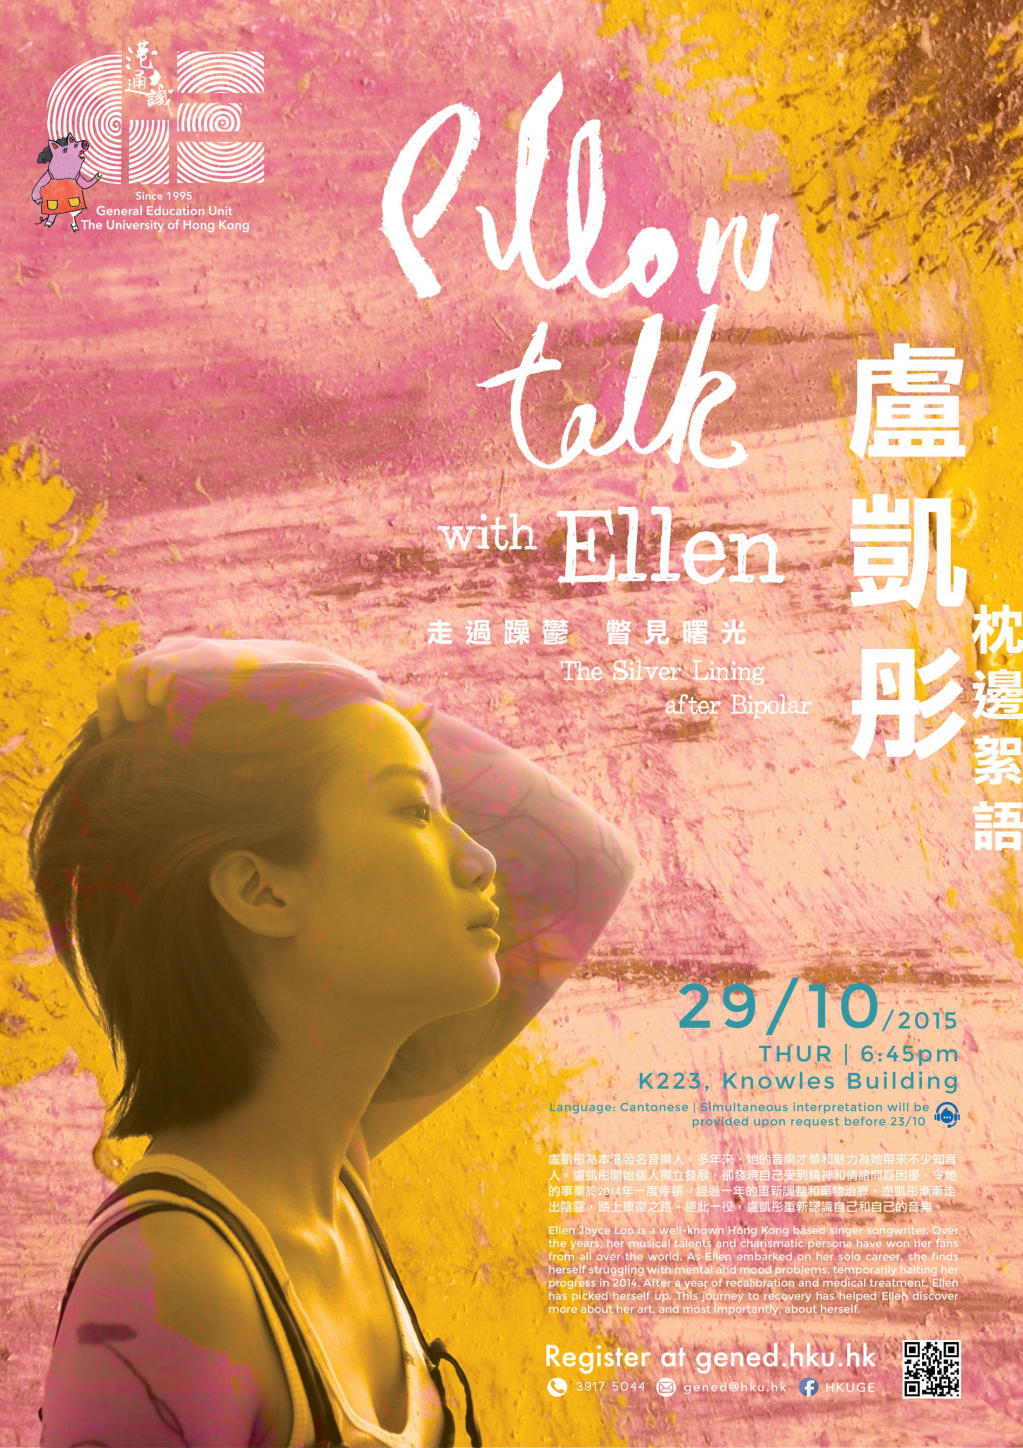 盧凱彤 枕邊絮語 - 走過躁鬱 瞥見曙光 Pillow Talk with Ellen Loo